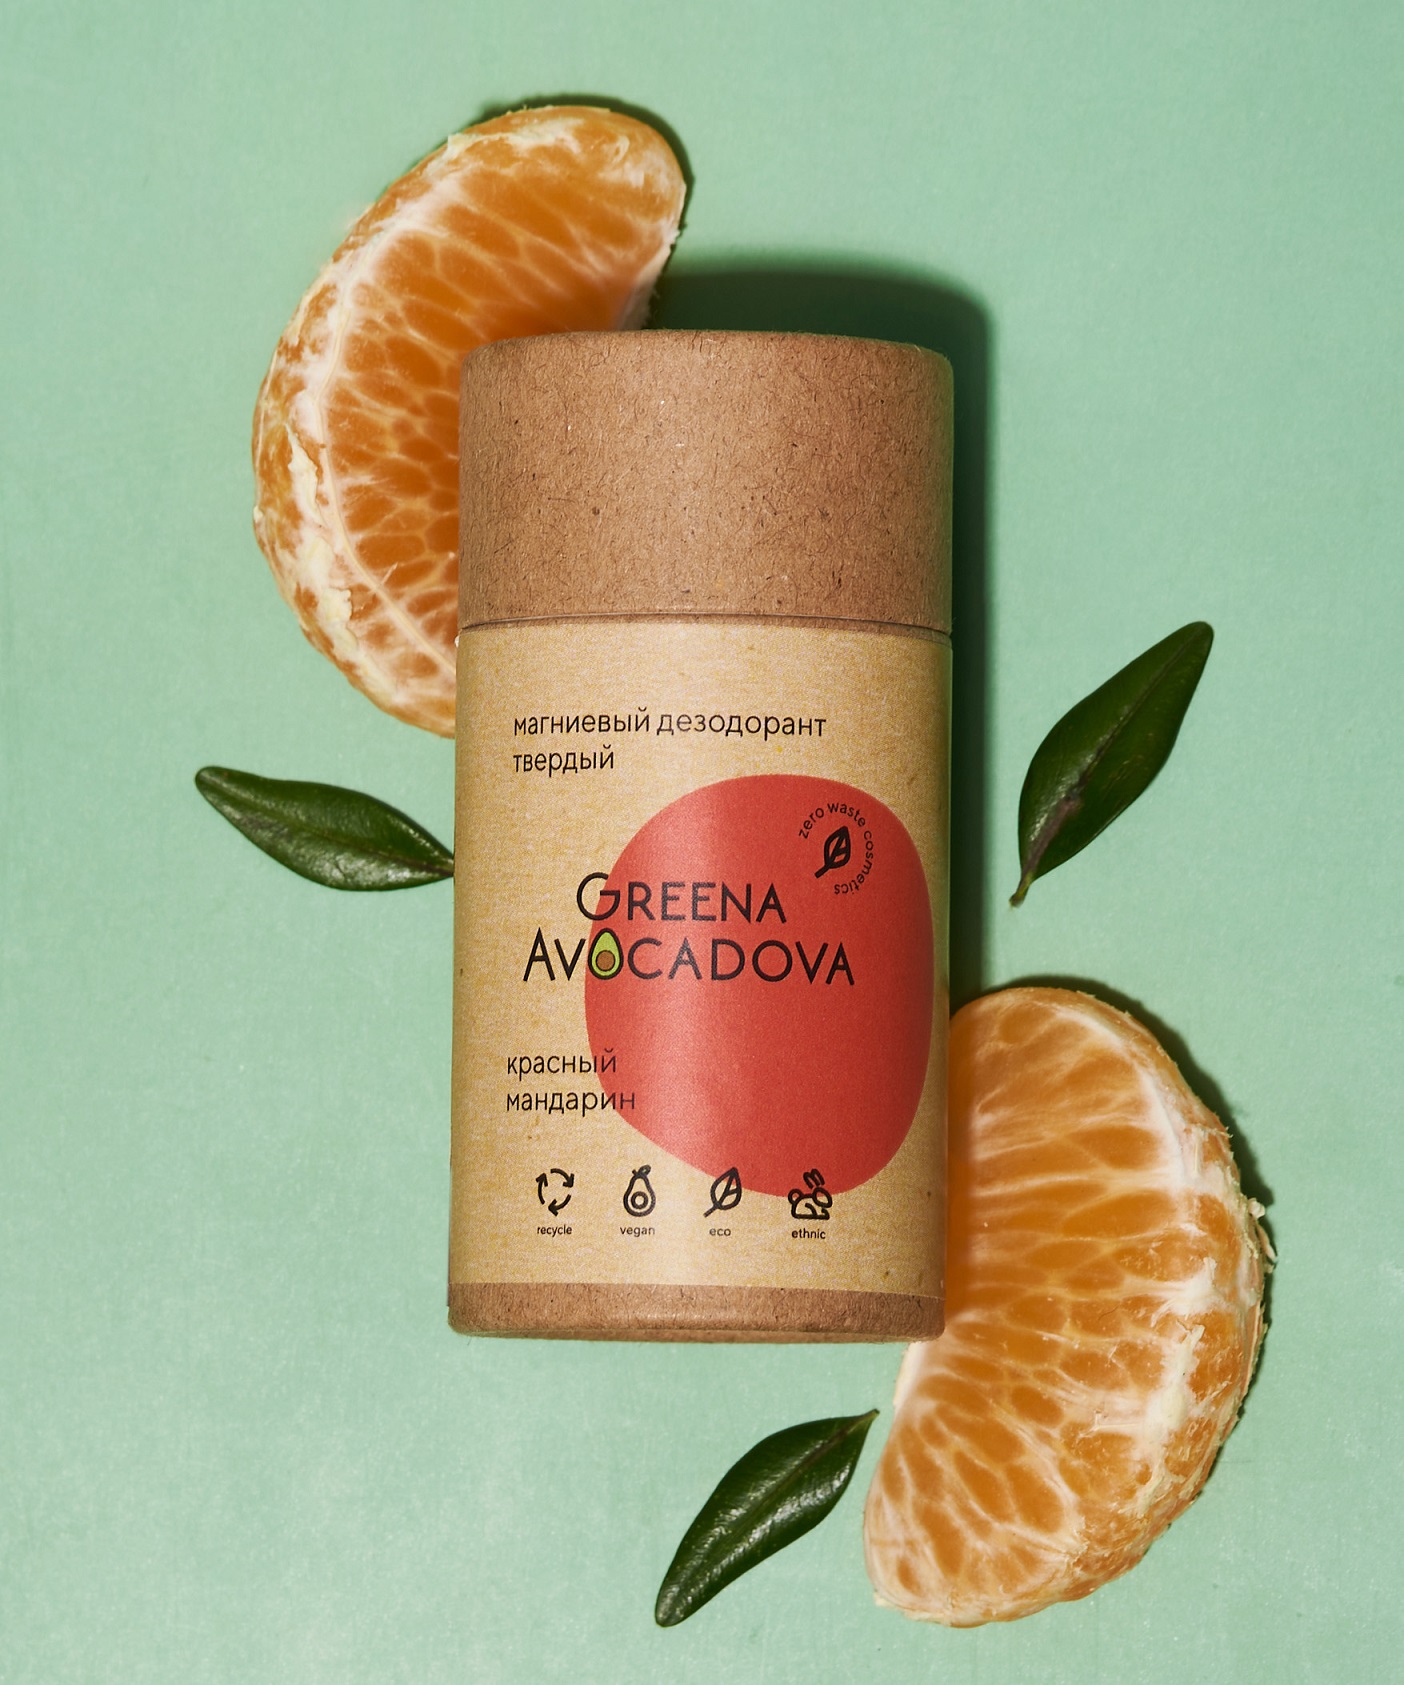 Натуральный твердый дезодорант Greena Avocadova Красный мандарин - фото 4